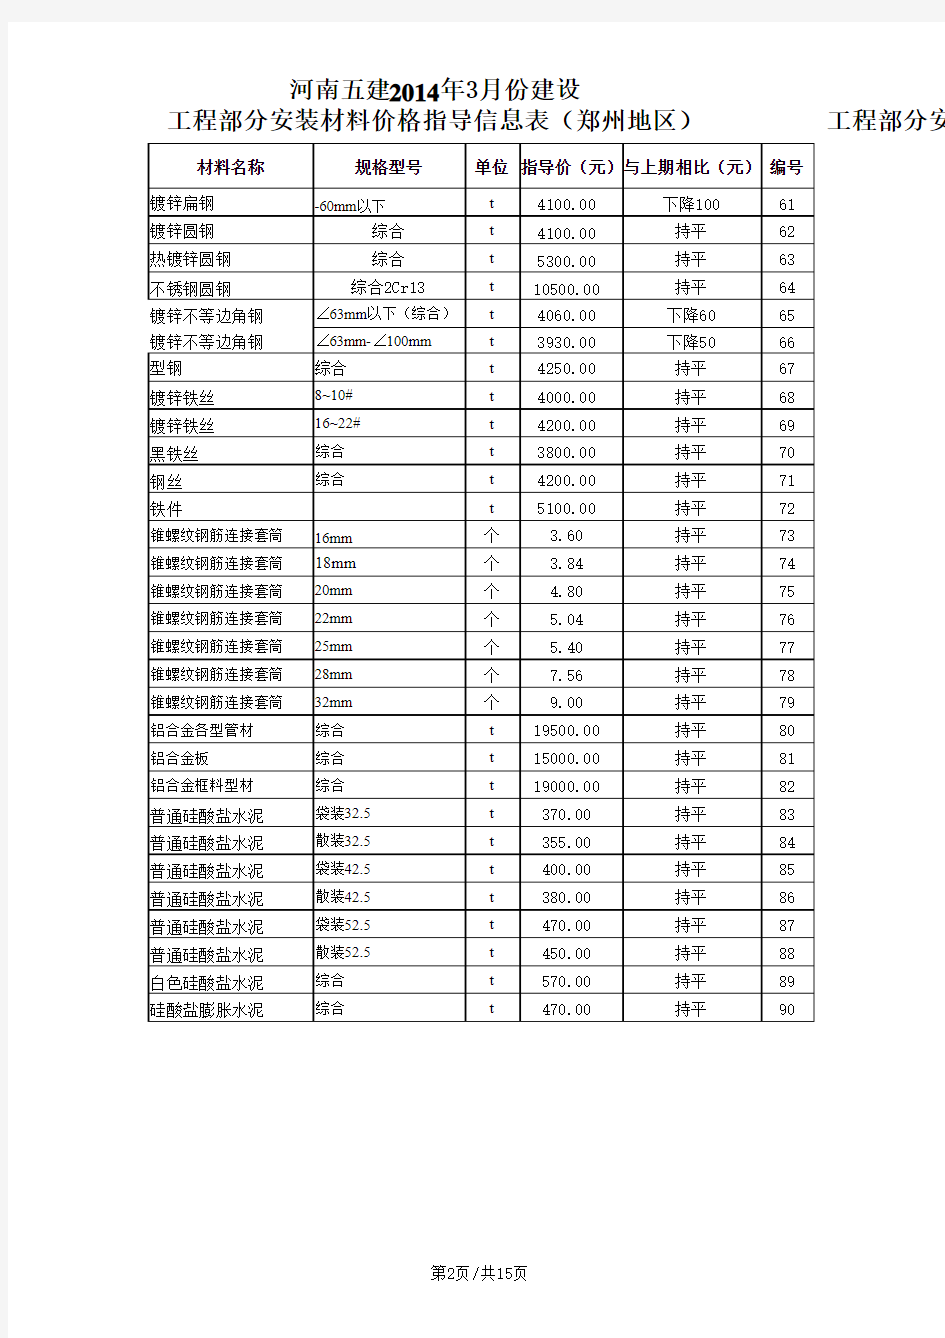 2014325105118_7主要材料价格信息价表2014年3月份 (4)